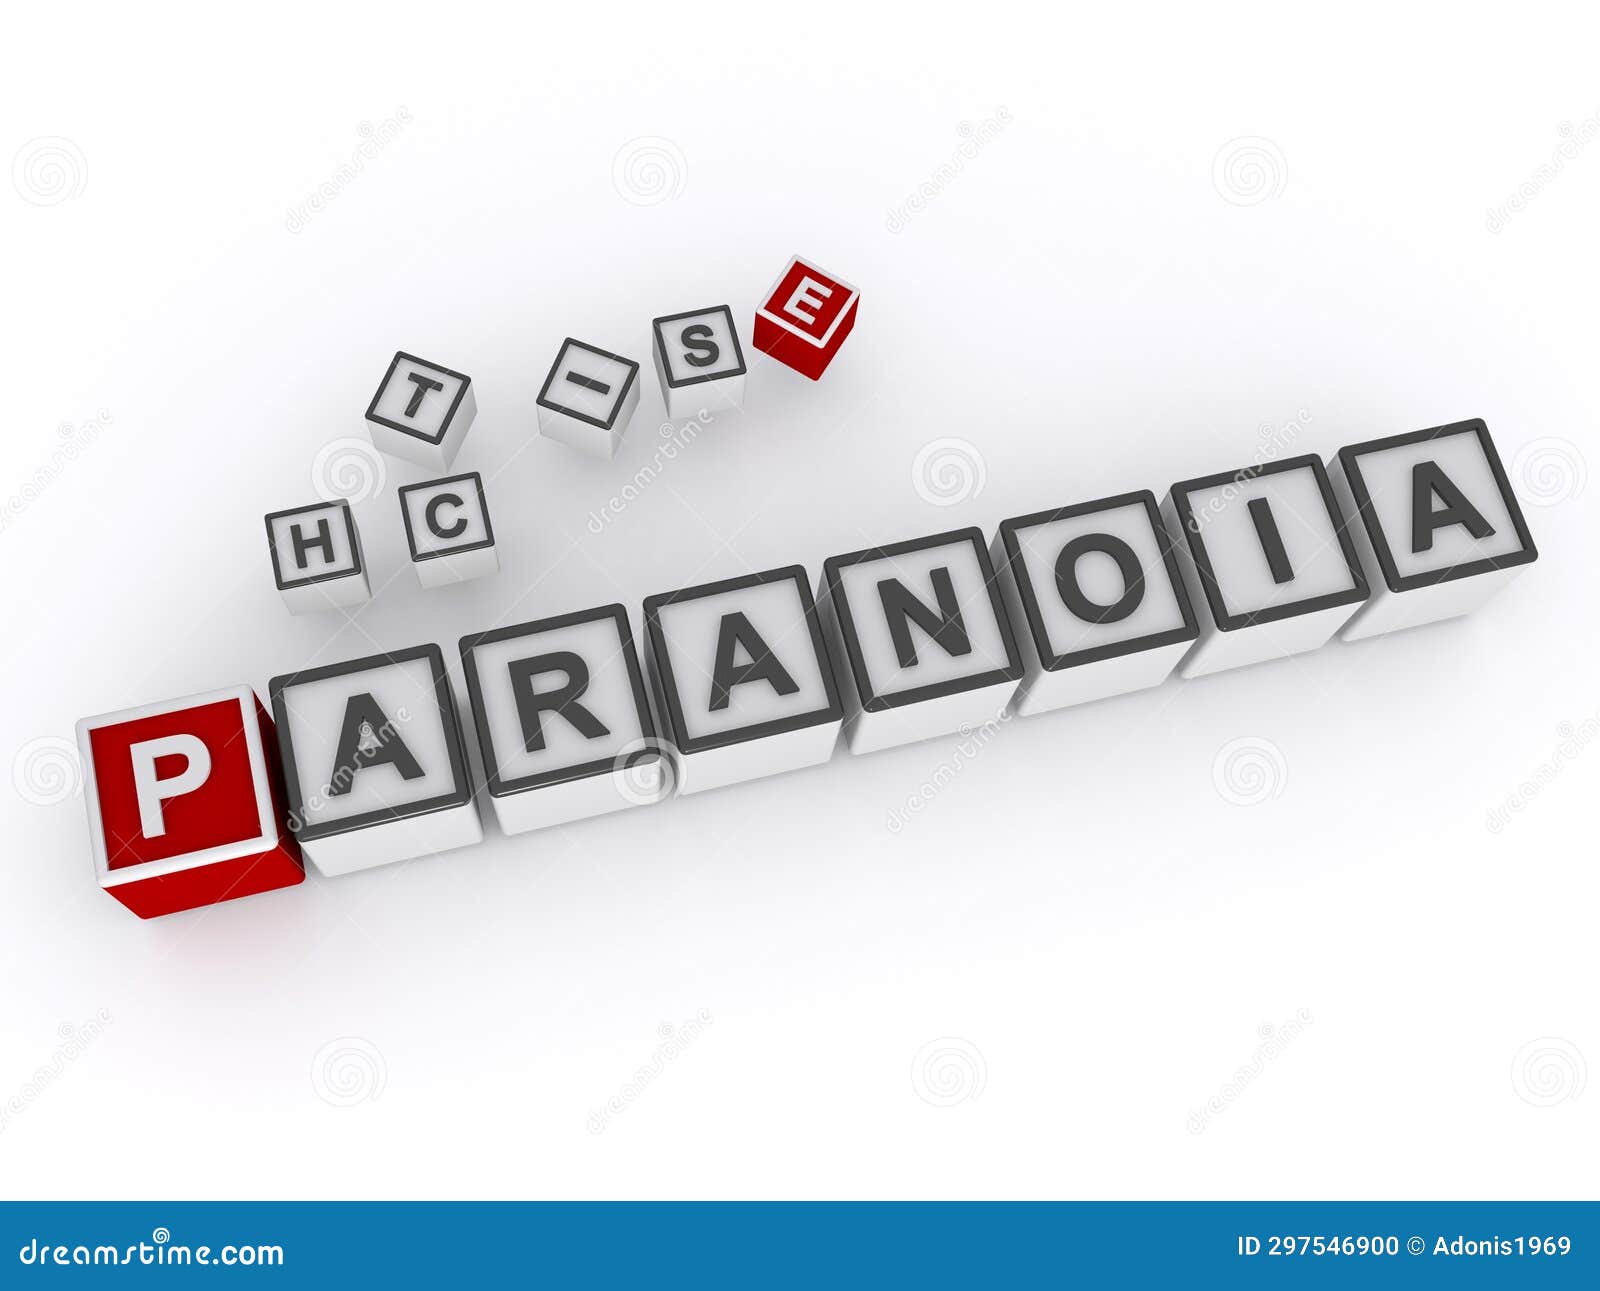 paranoia word block on white